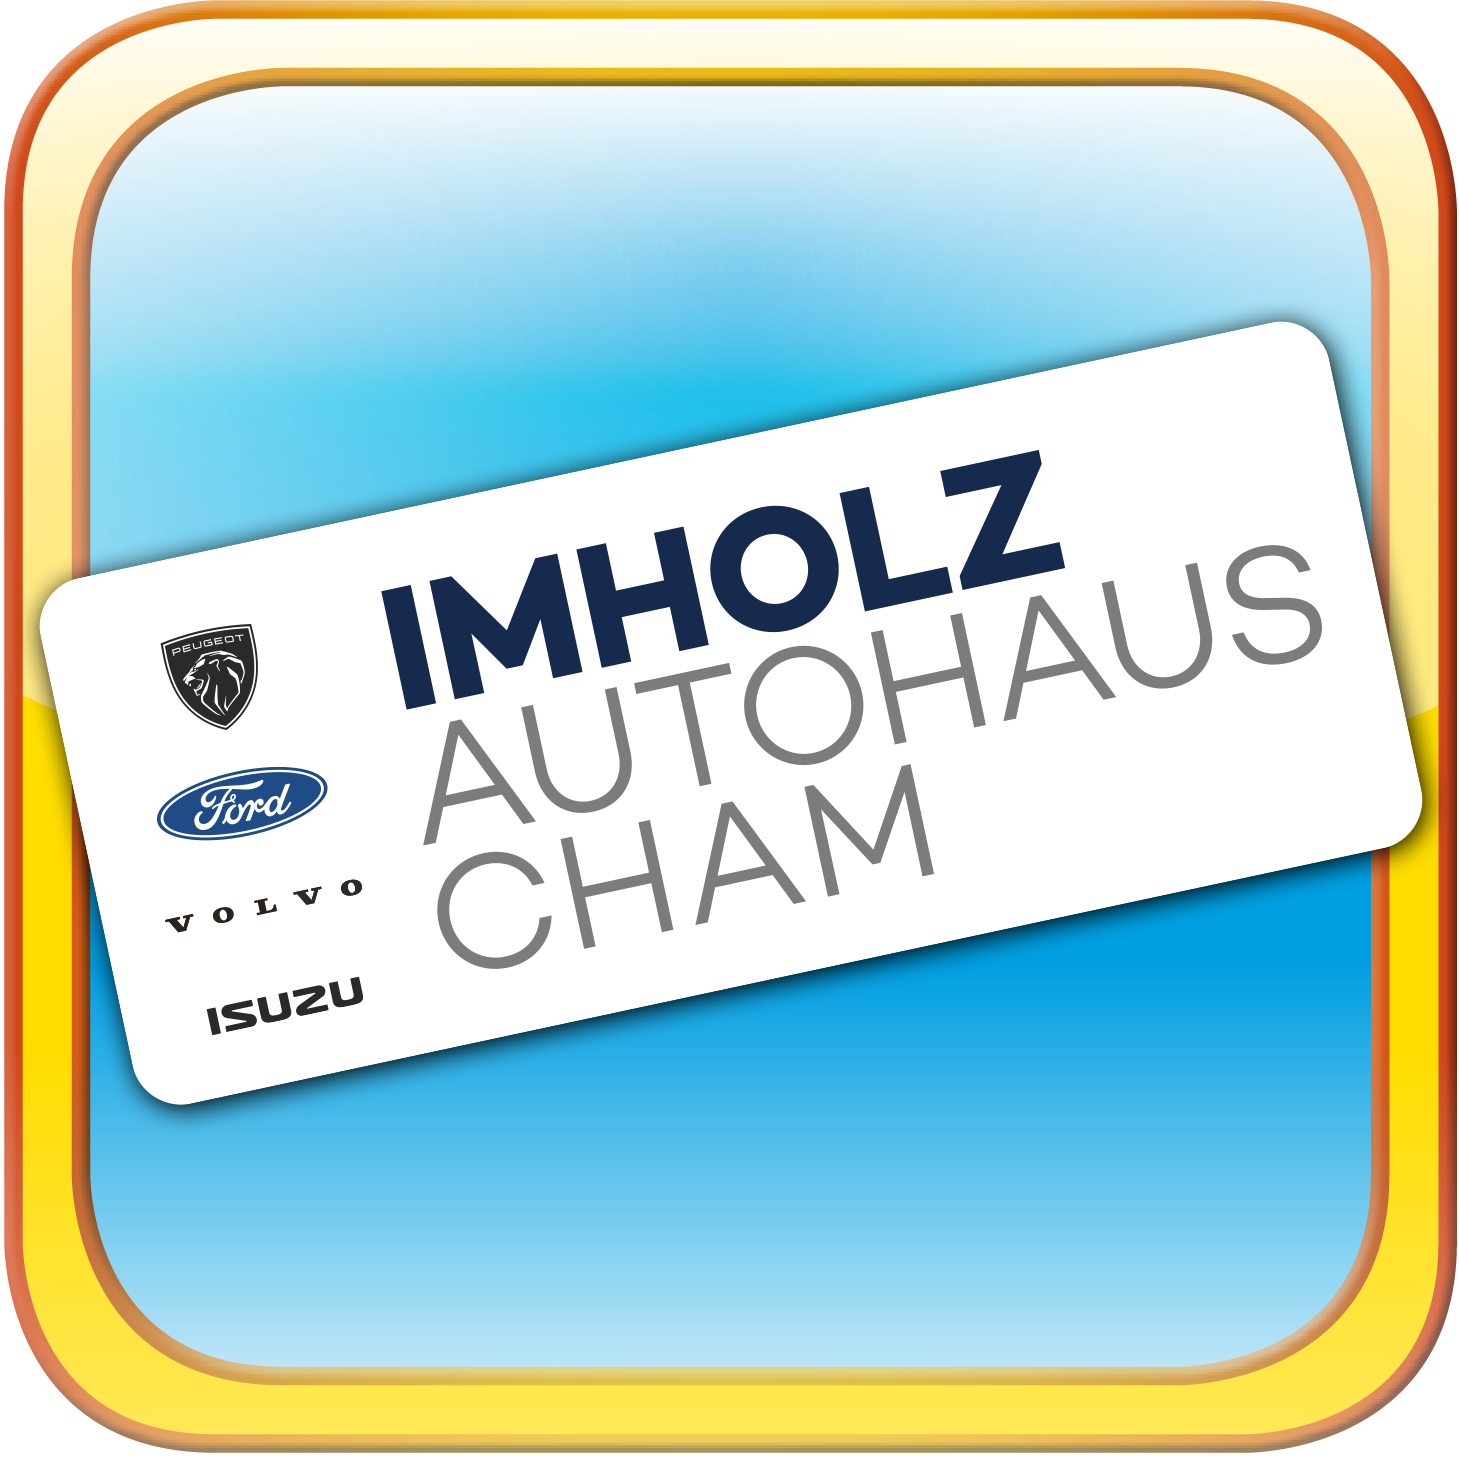 Imholz Authaus Cham unterstützt das Parkvolleyball-Turnier in Cham | Volleyball-Turnier im Kanton Zug | Imholz Authaus Cham, Peugeot Ford Isuzu Volvo